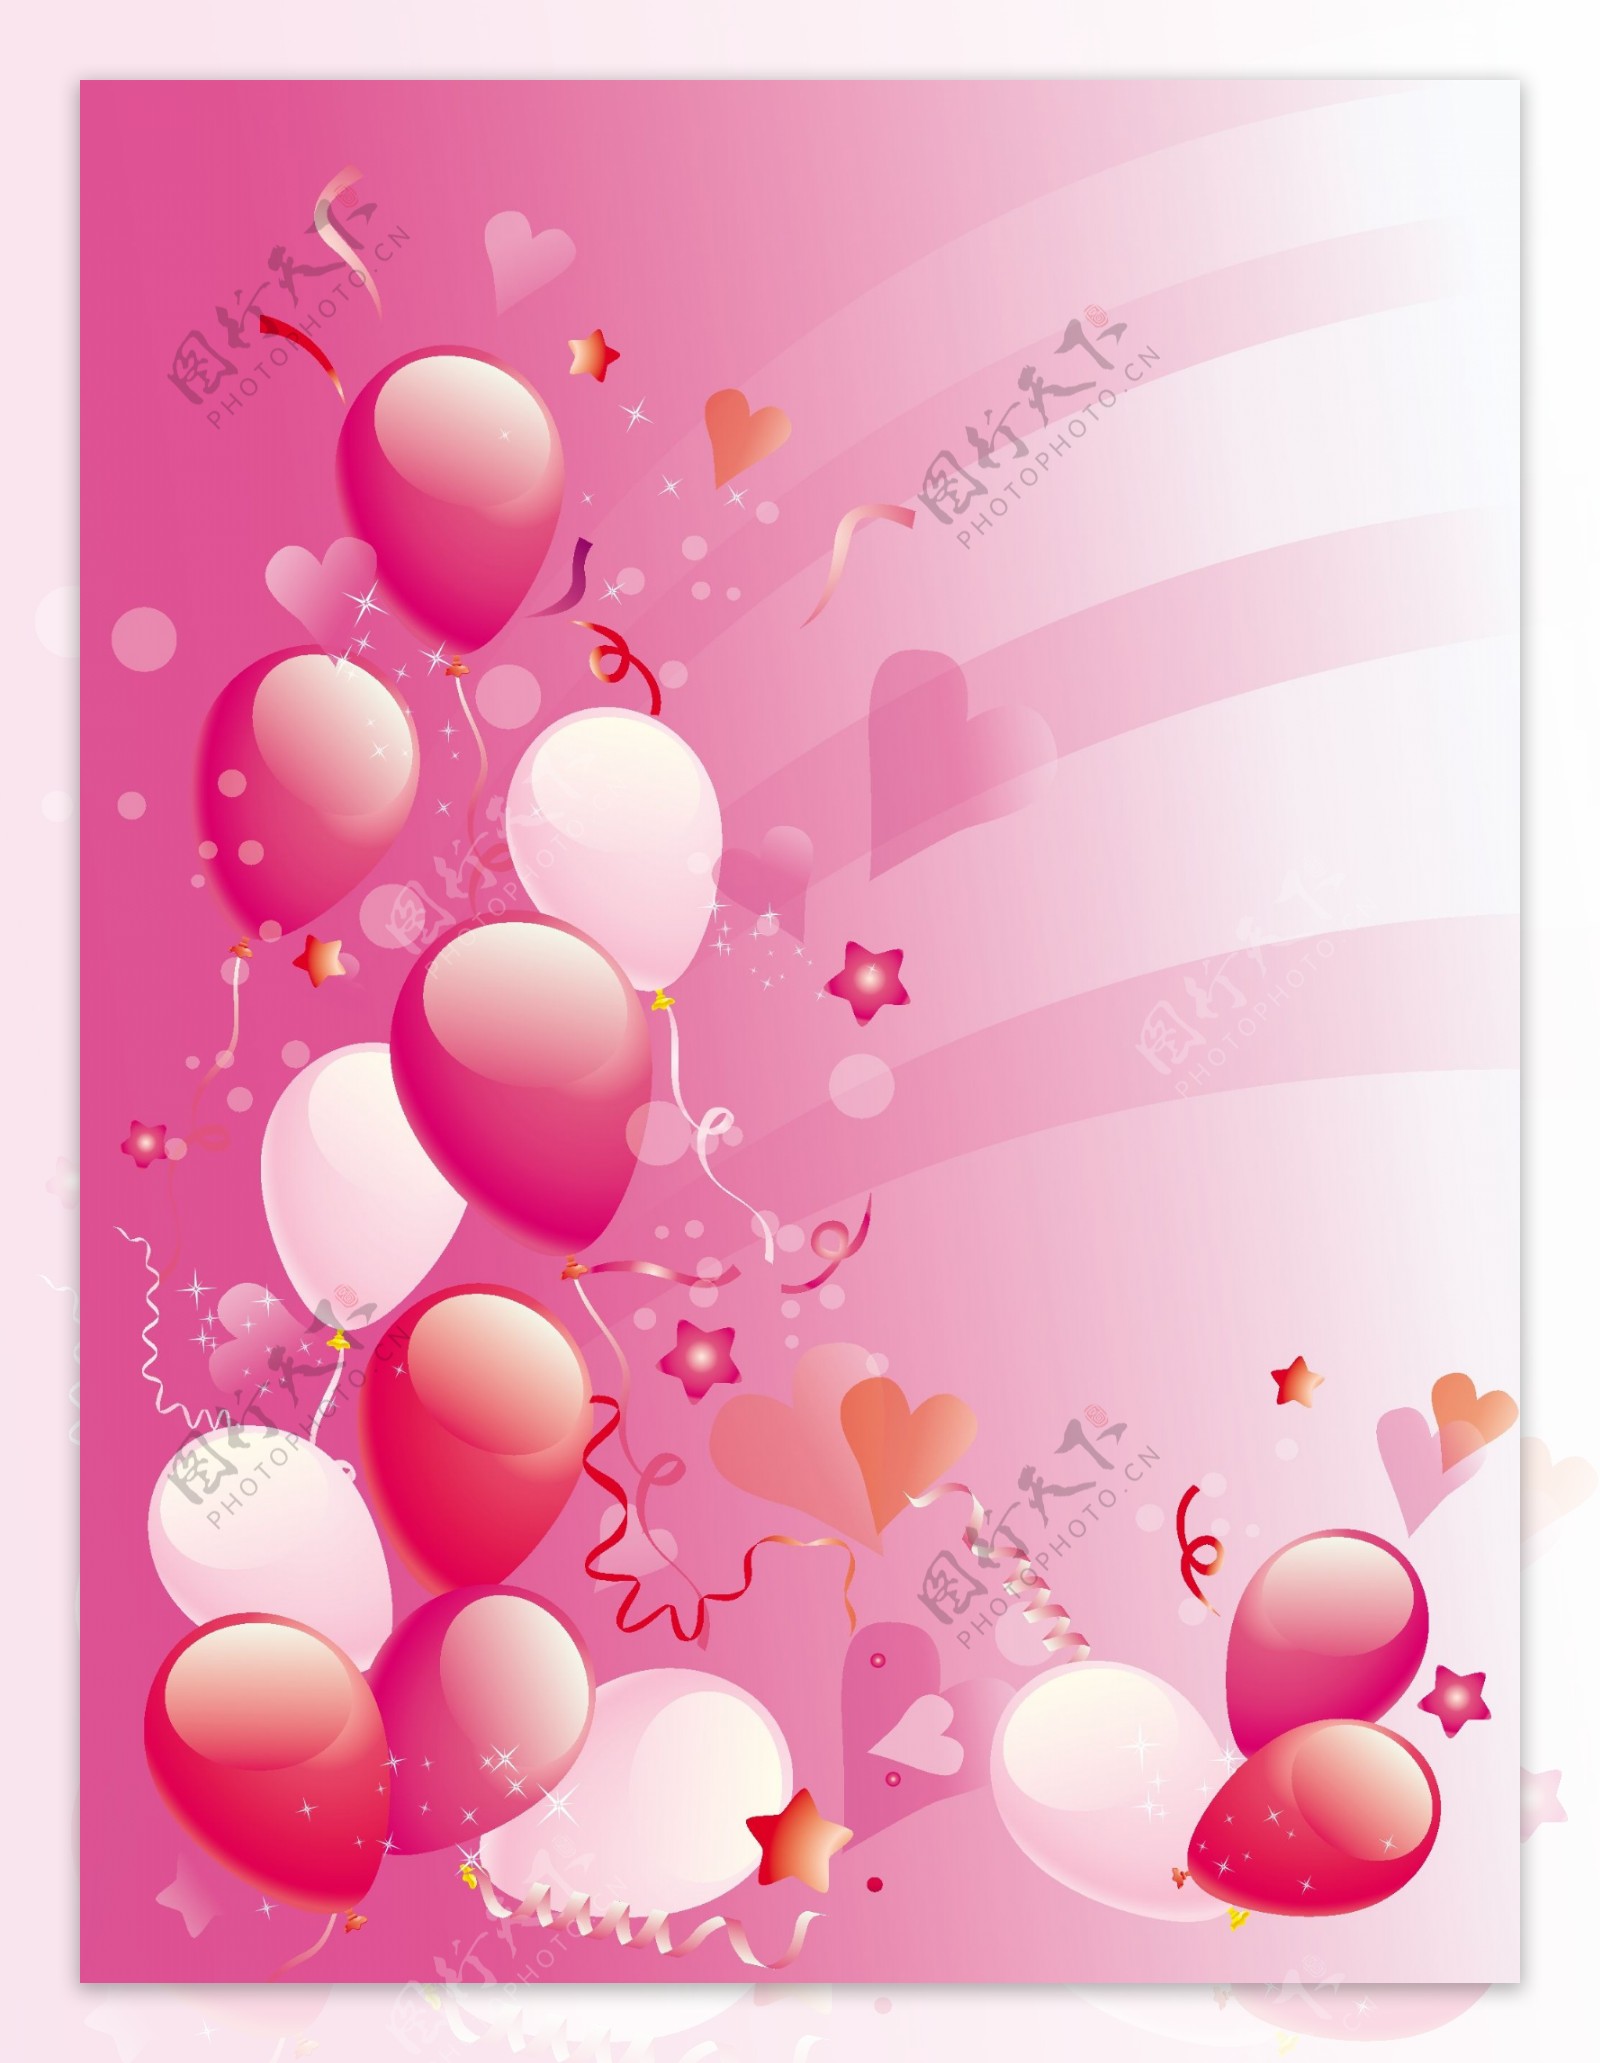 粉红派对气球背景